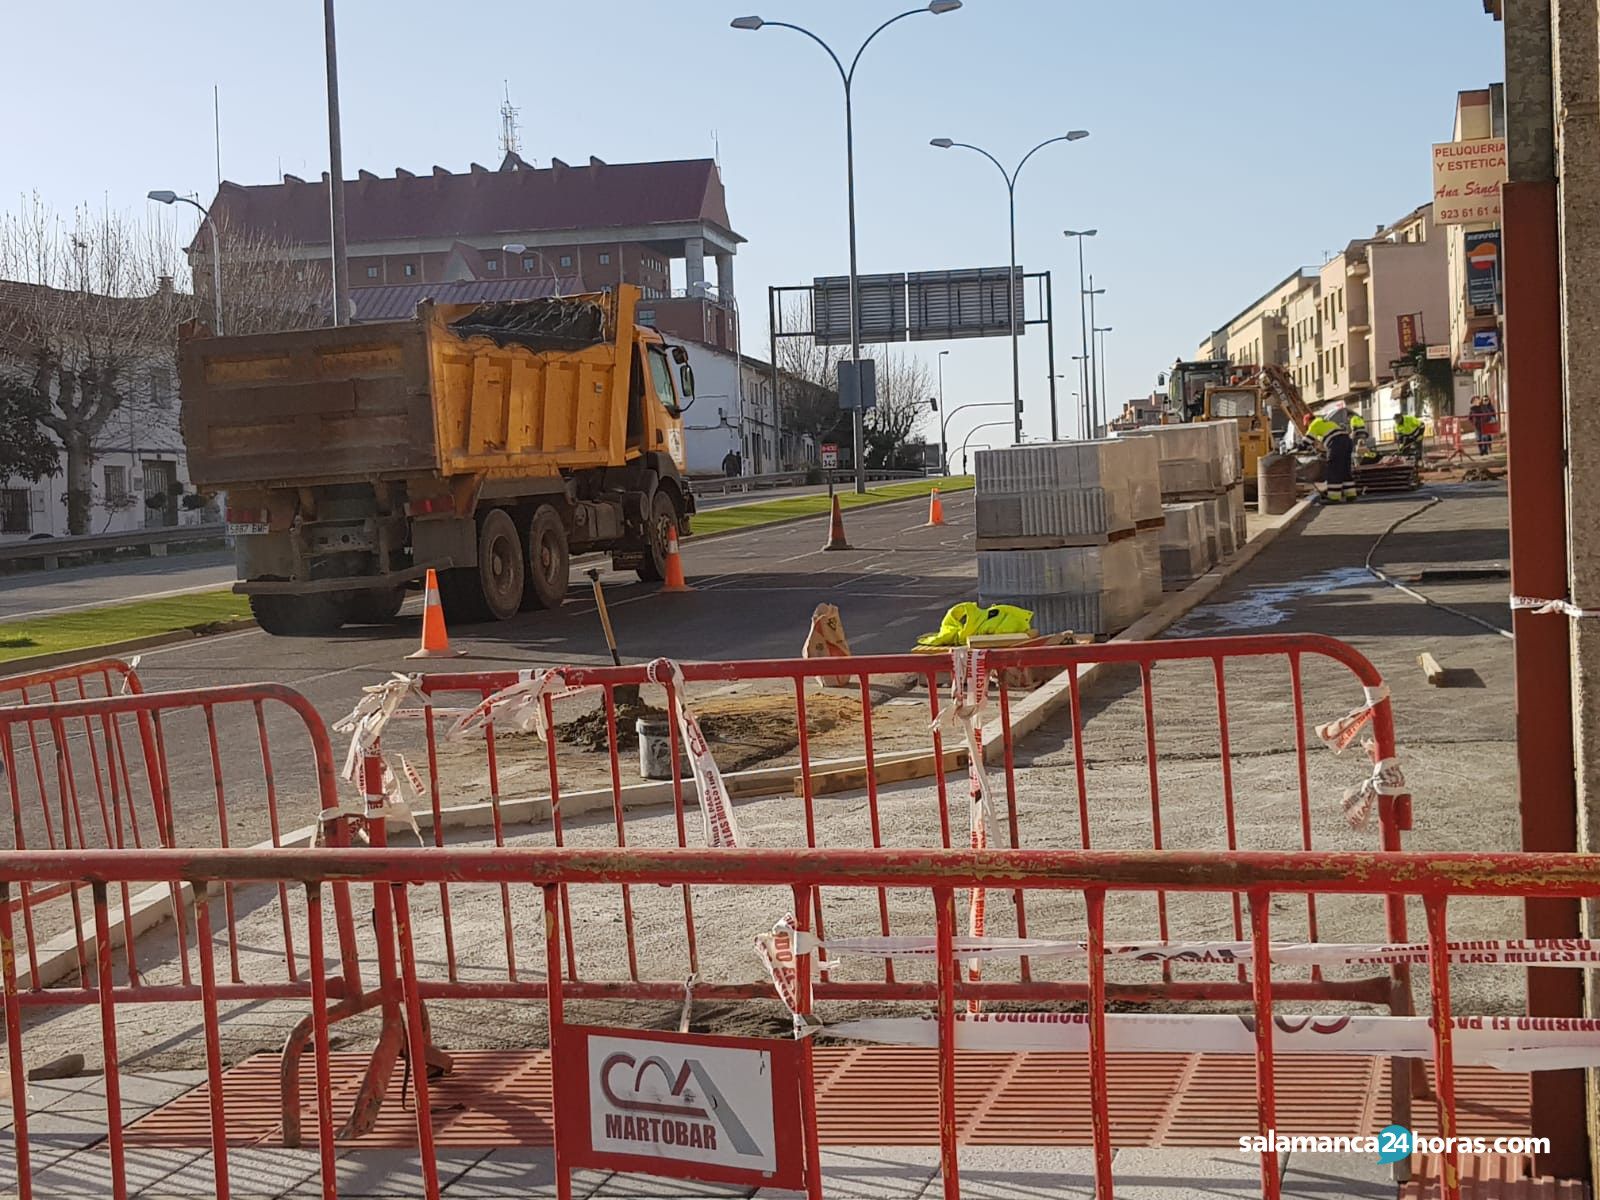  Cortes de tráfico acera obras sur carretera de béjar saavedra y fajardo (14) 